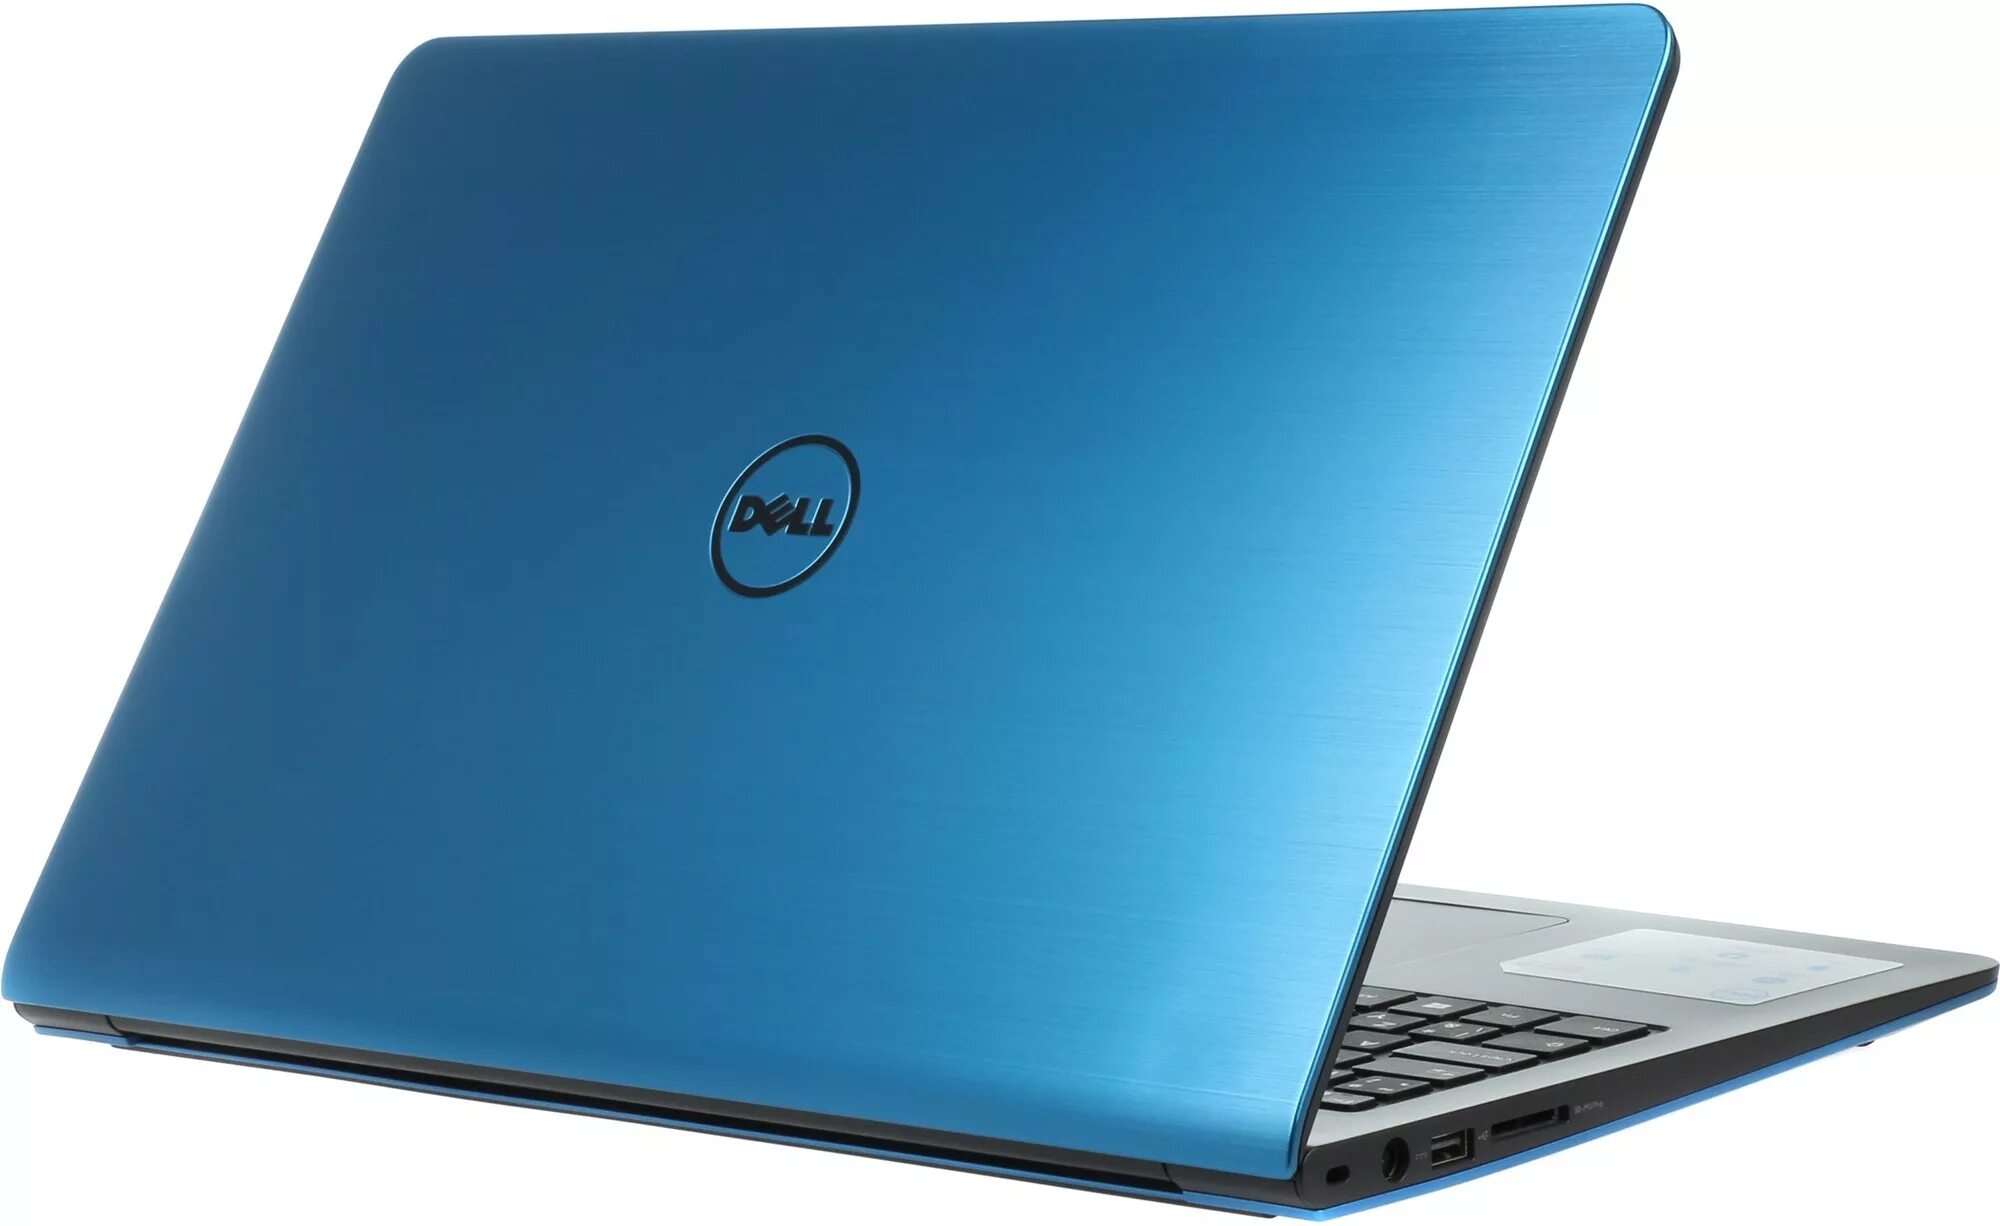 Синий ноутбук. Dell Inspiron 15 5570. Ноутбук Делл инспирион синий. Dell ноутбук Inspiron 15 синий. Ноутбук Делл инспирон голубой.